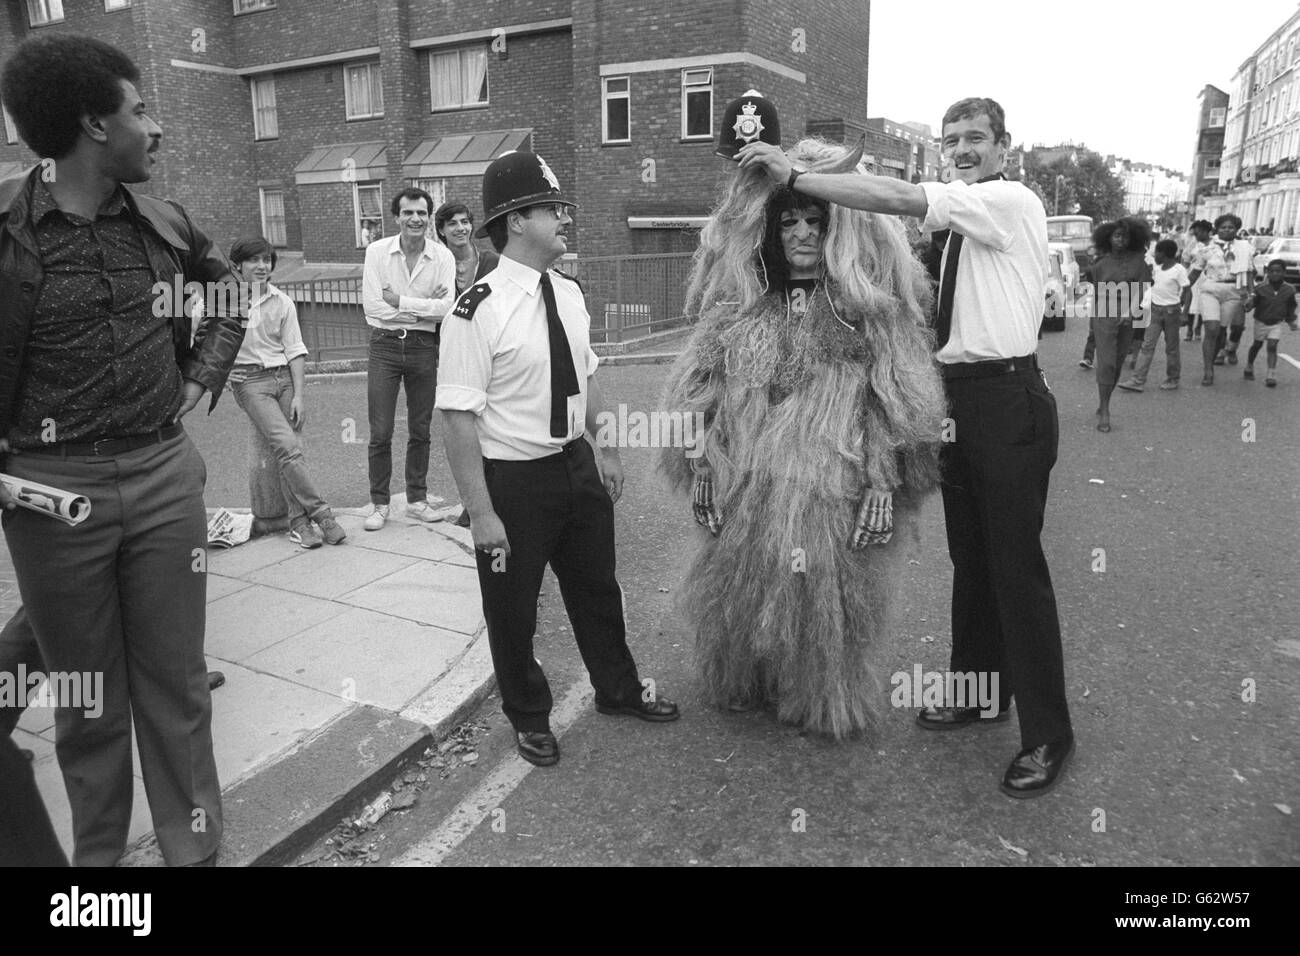 Ein Notting Hill Karneval Hexenarzt bekommt magische Hilfe in Form eines Polizist Helm während der heutigen friedlichen Feierlichkeiten. Stockfoto